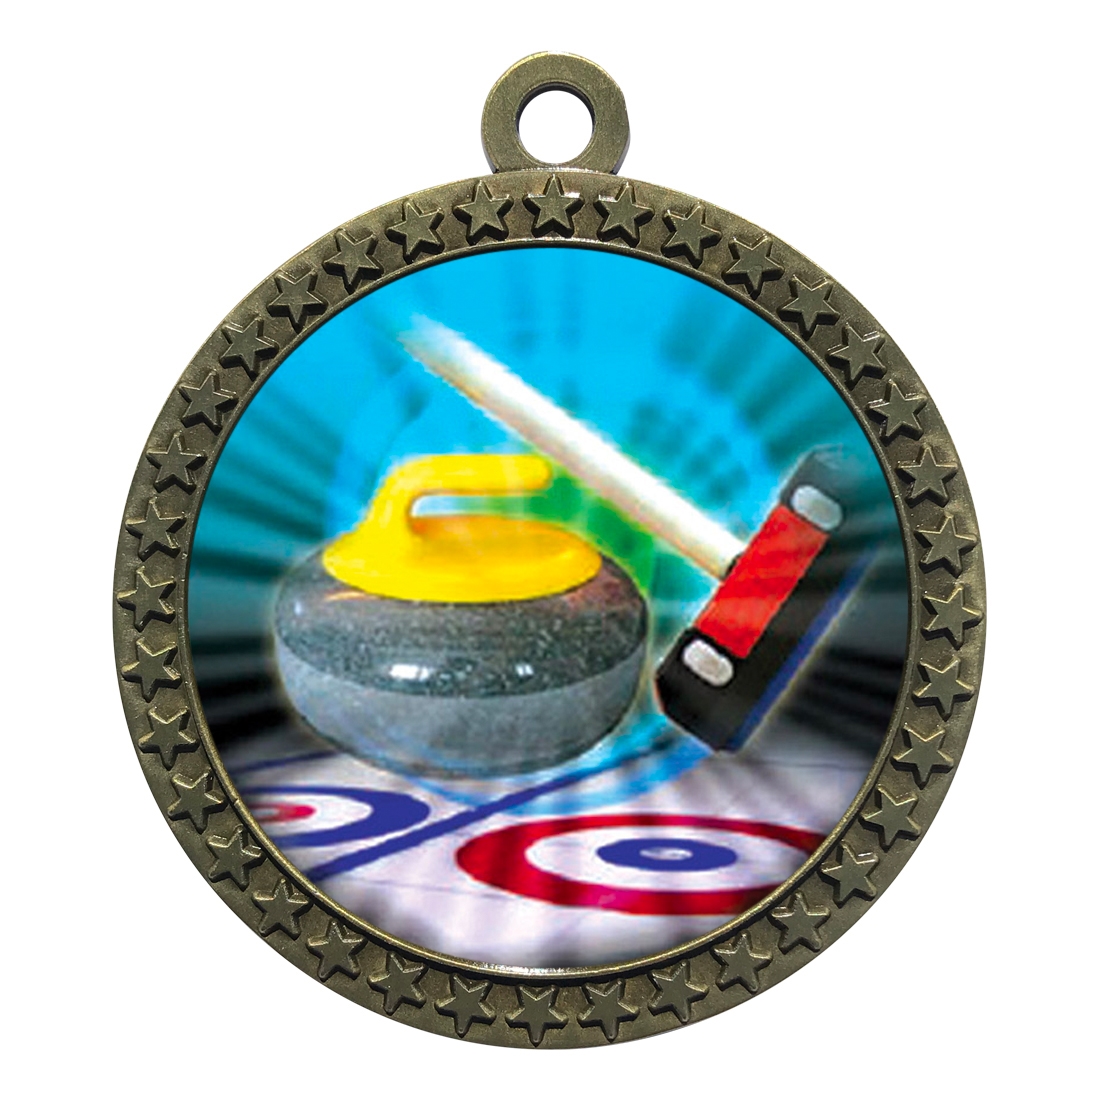 2-1/2" Curling Medal